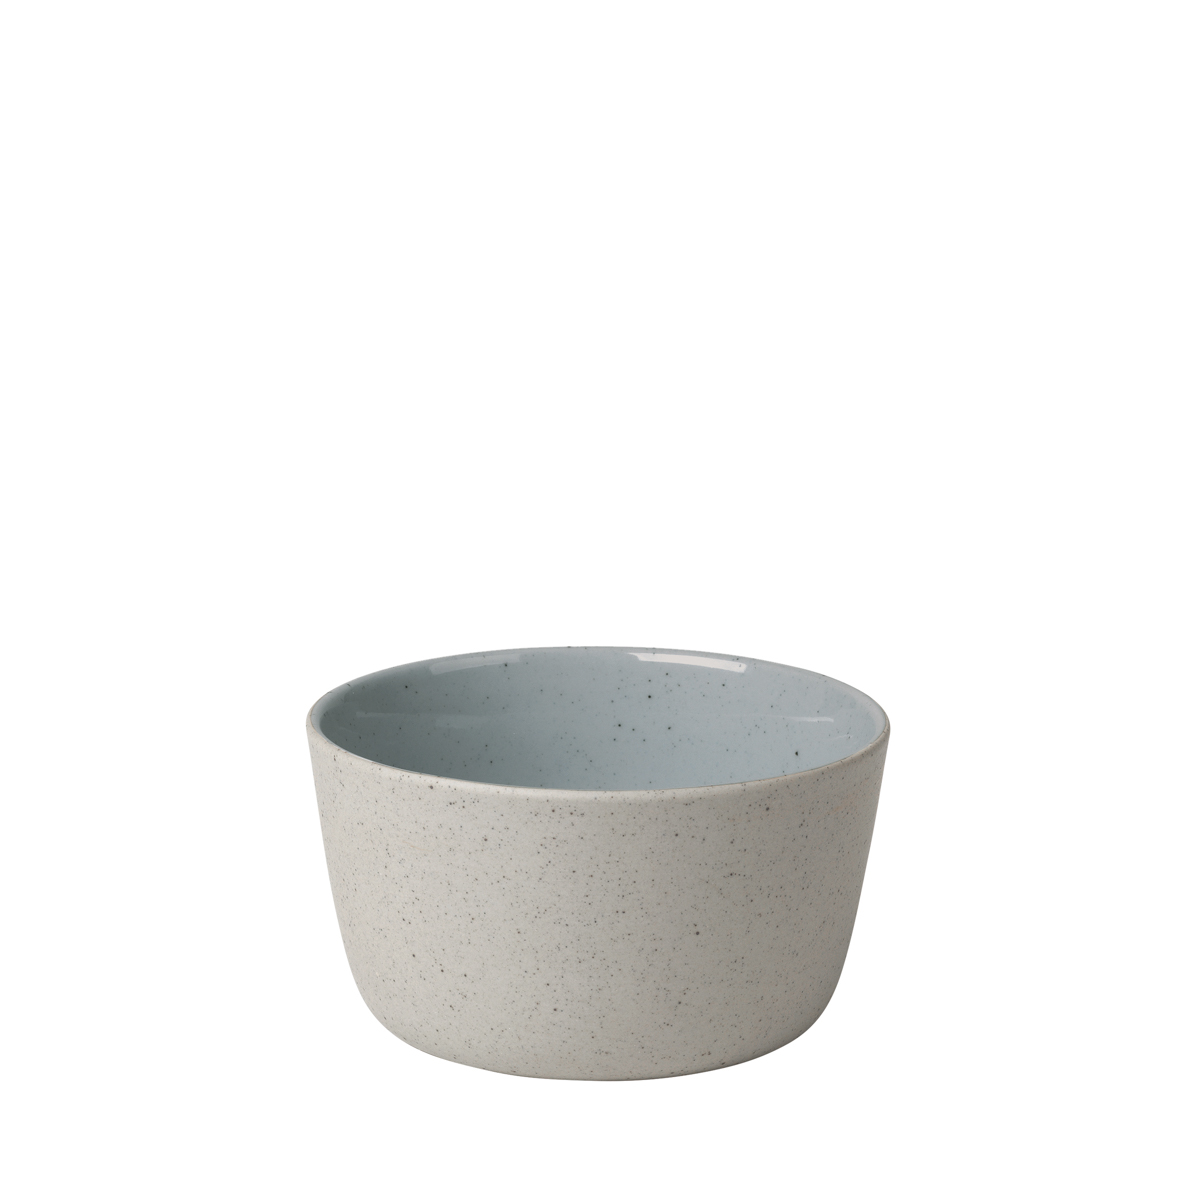 Schale -SABLO- Stone Size S, Ø 11 cm. Material: Keramik. Von Blomus.